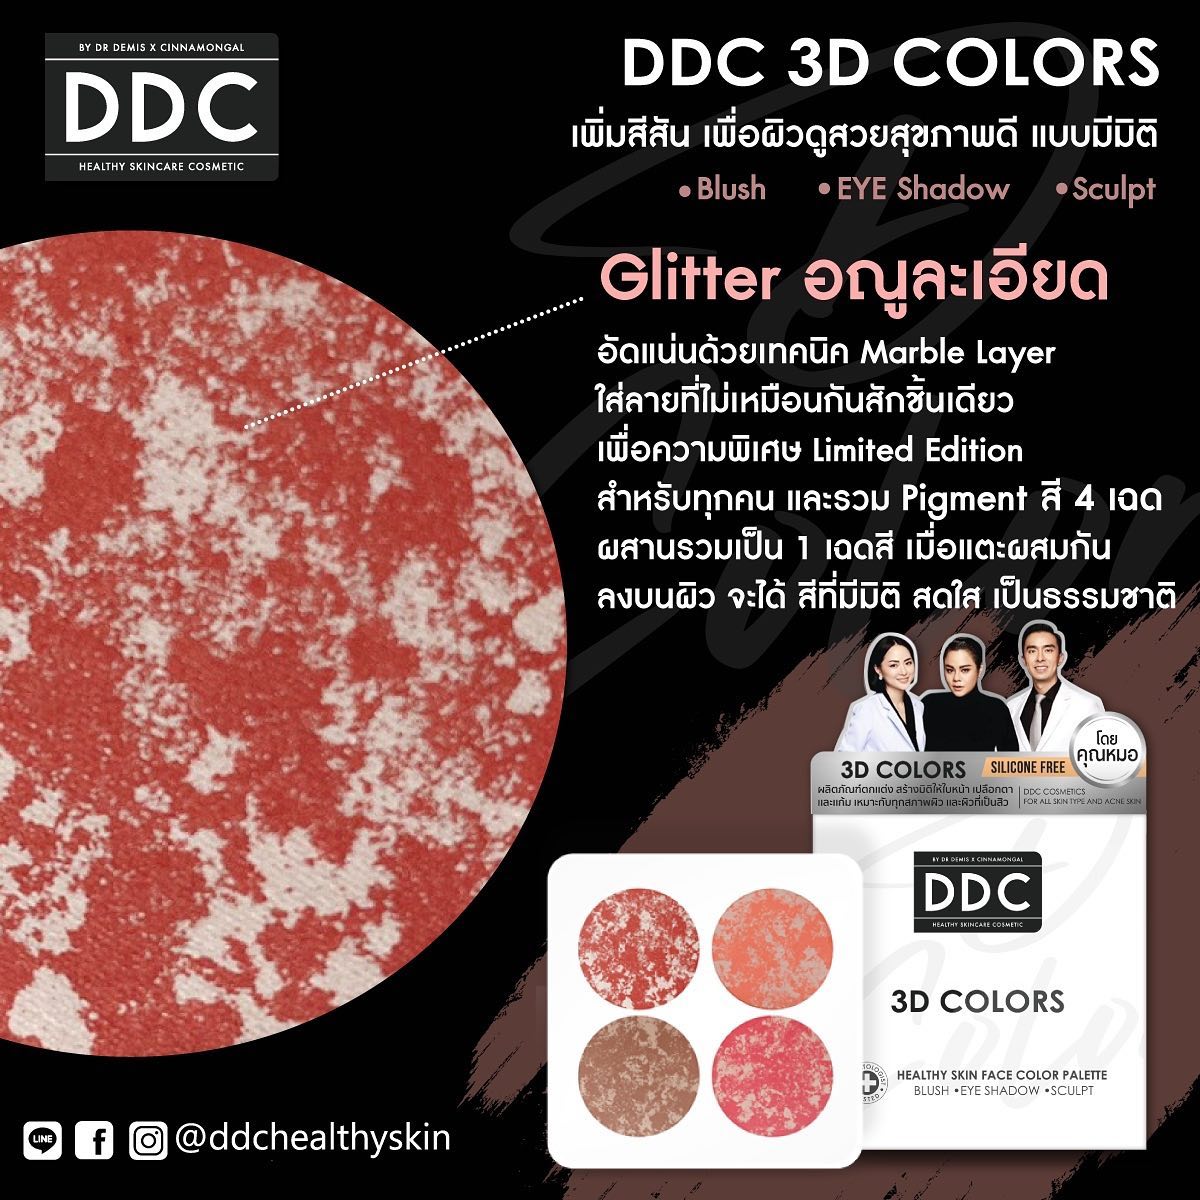 DrDemisX Cinnamongal,DDC 3D Colors 2.5*4g,DDC 3D Colors 2.5*4g ราคา,DDC 3D Colors 2.5*4g รีวิว,